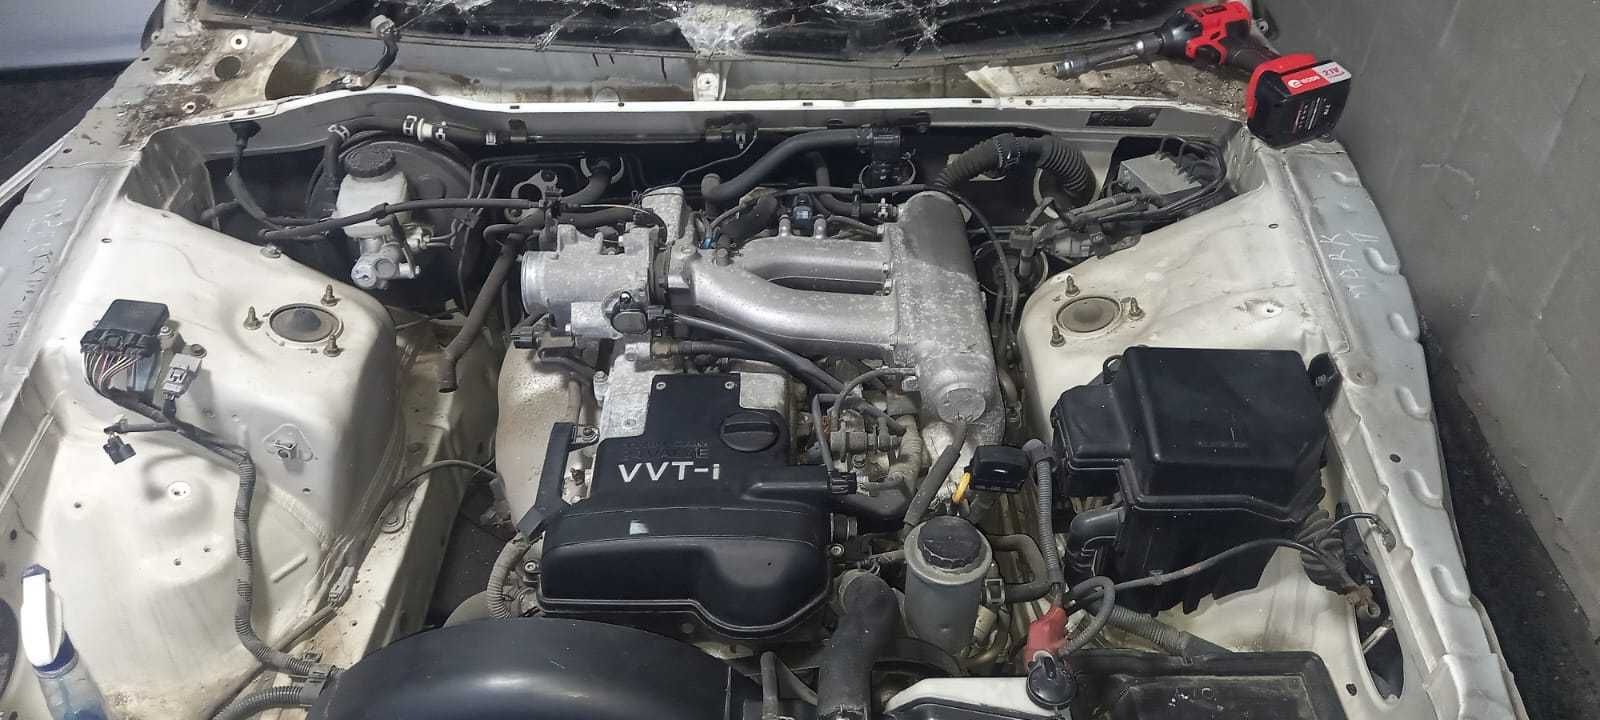 Двигатель Двс 1JZ-GE Toyota Mark2/Progress/Cresta 2WD (Kaтушeчный)